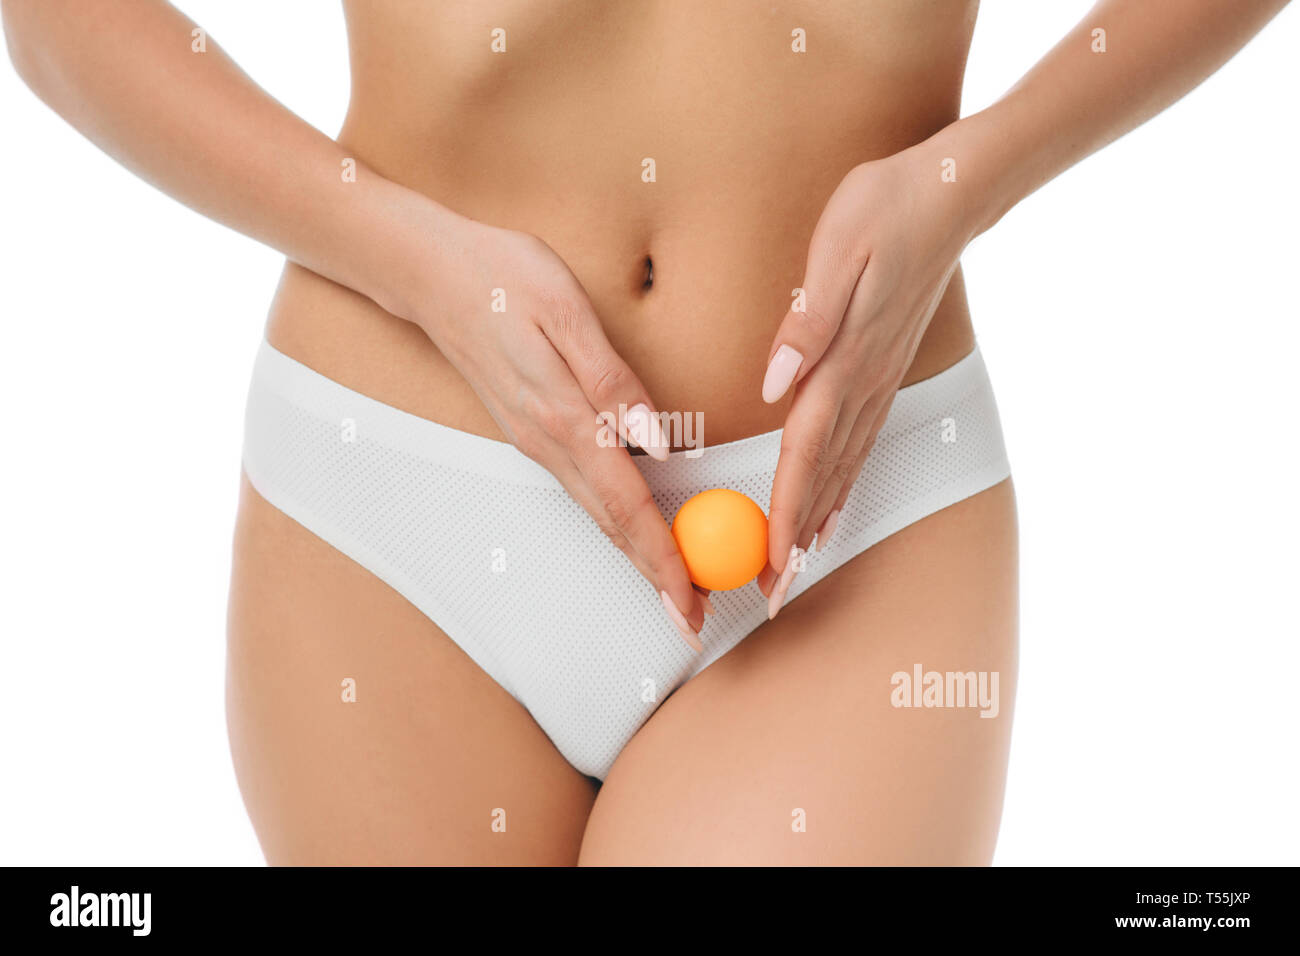 woman showing ovulation process holding near ovary ball like ovum. Stock Photo